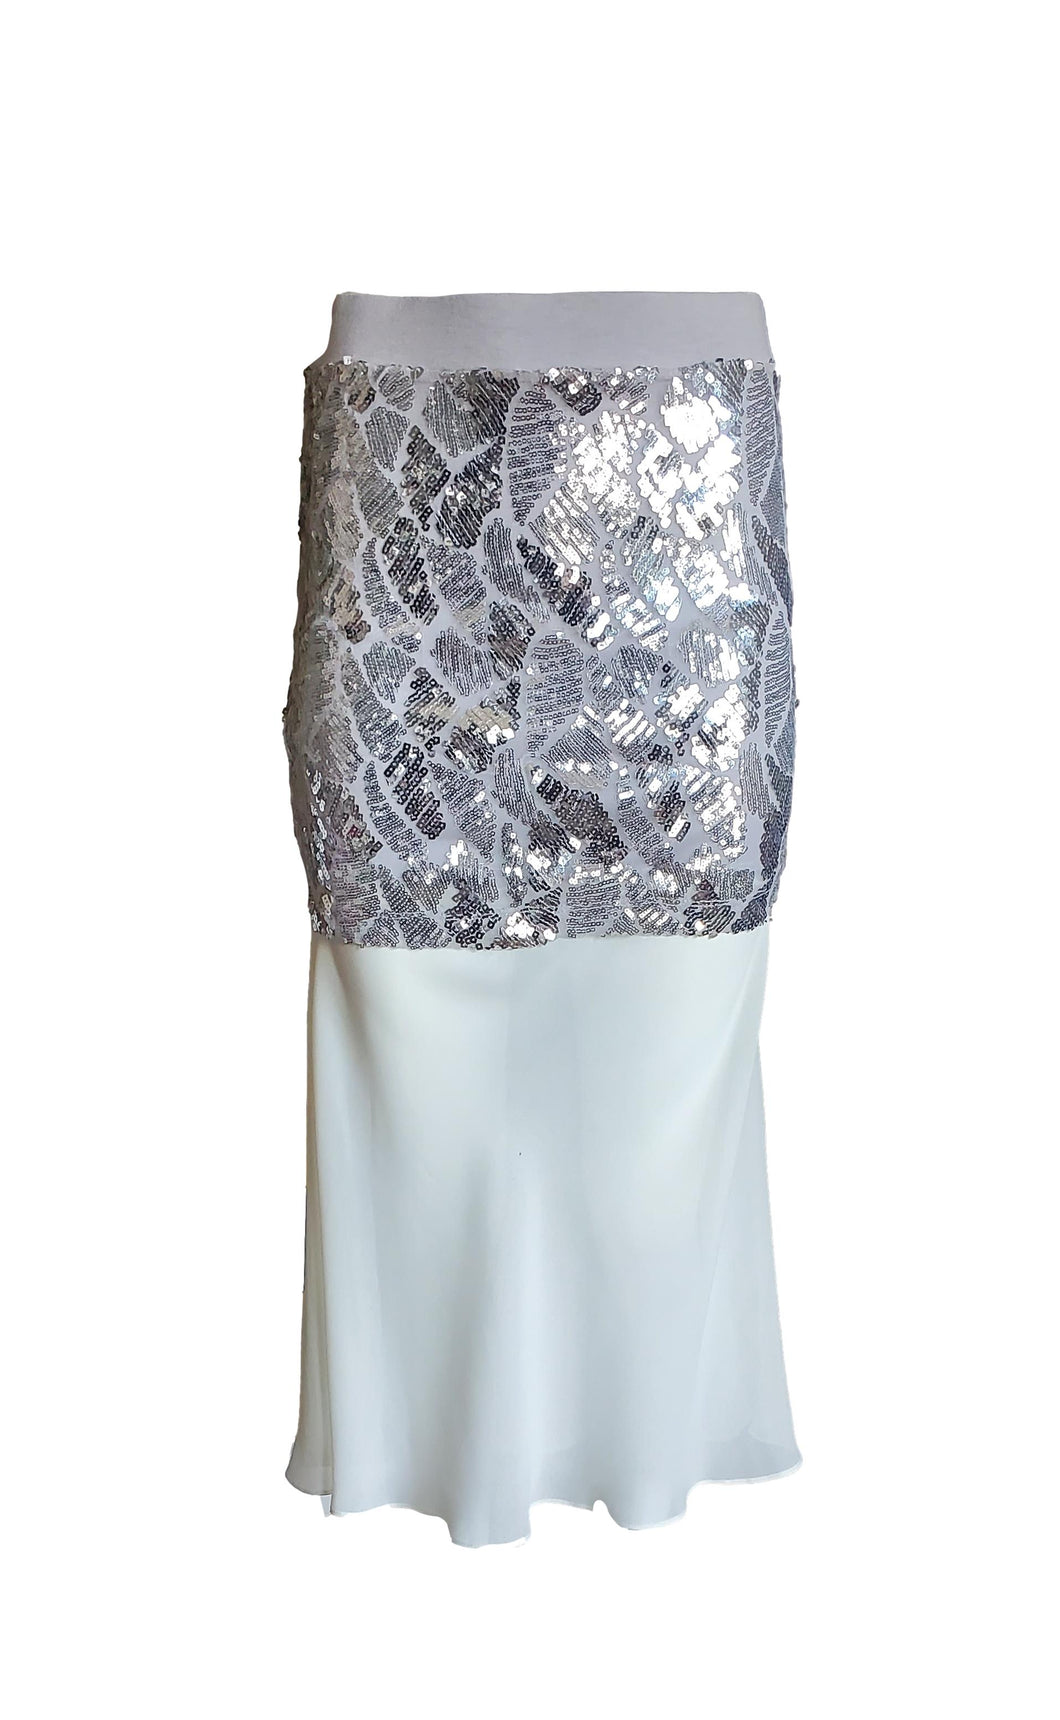 Women's Bespoke Silver Sequin Midi Skirt With White Sheer Flounce